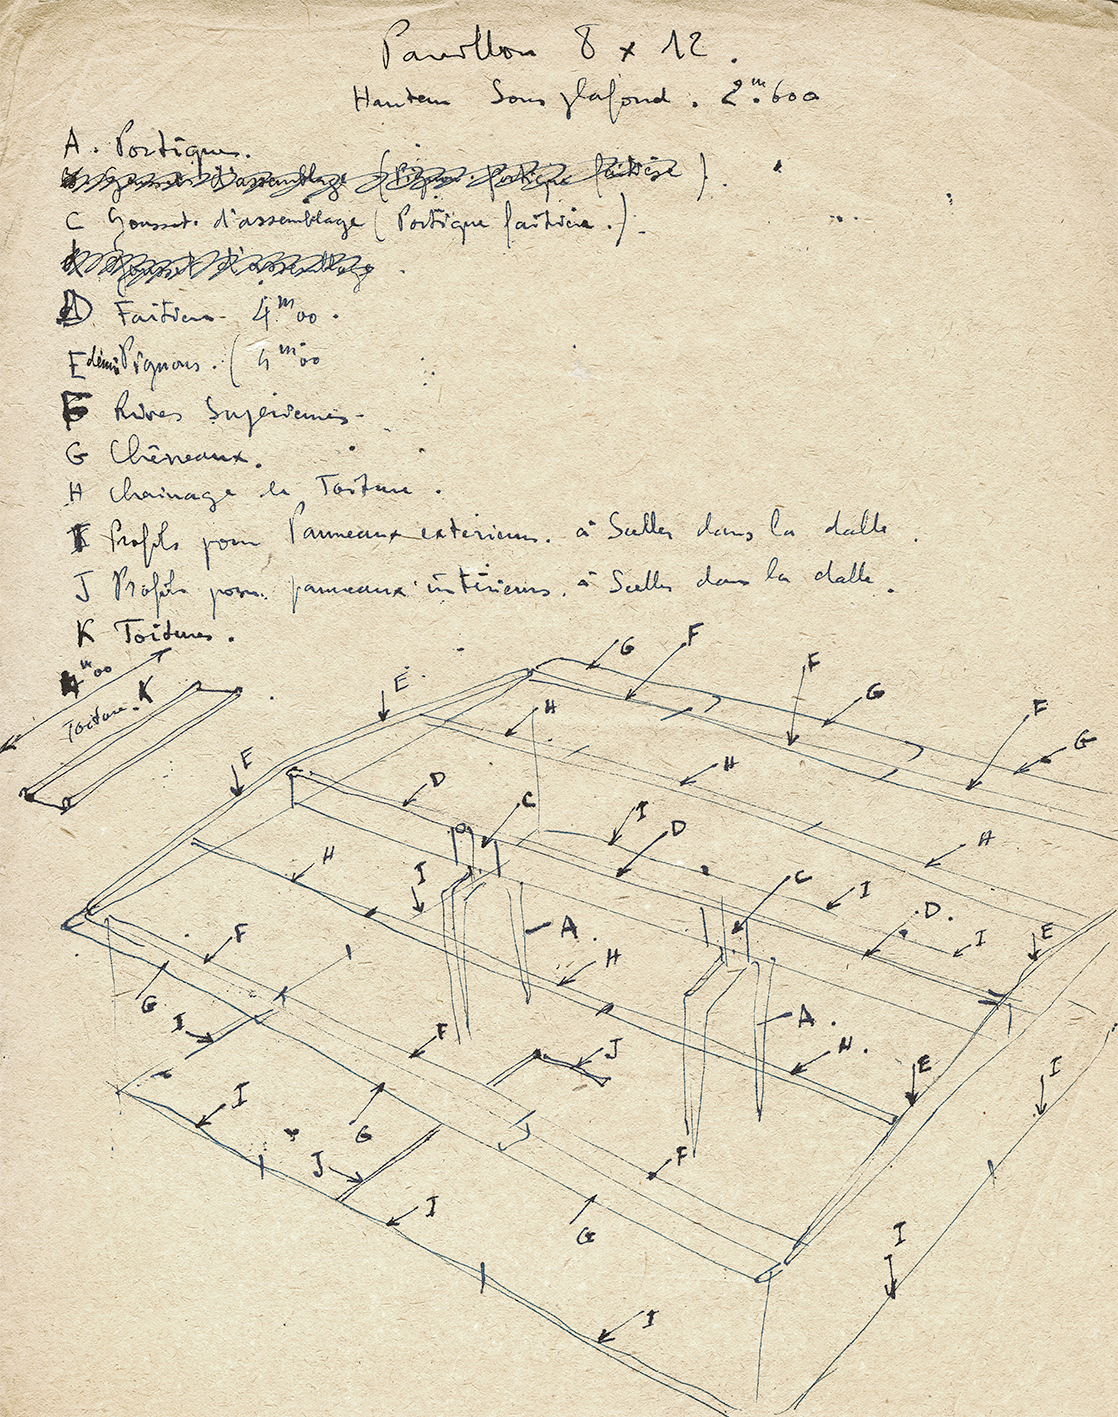 Ateliers Jean Prouvé, « Pavillon 8x12 ». Nomenclature et disposition des éléments de la structure et de l’habillage intérieur et extérieur. Dessins de Henri Prouvé, c. 1950.